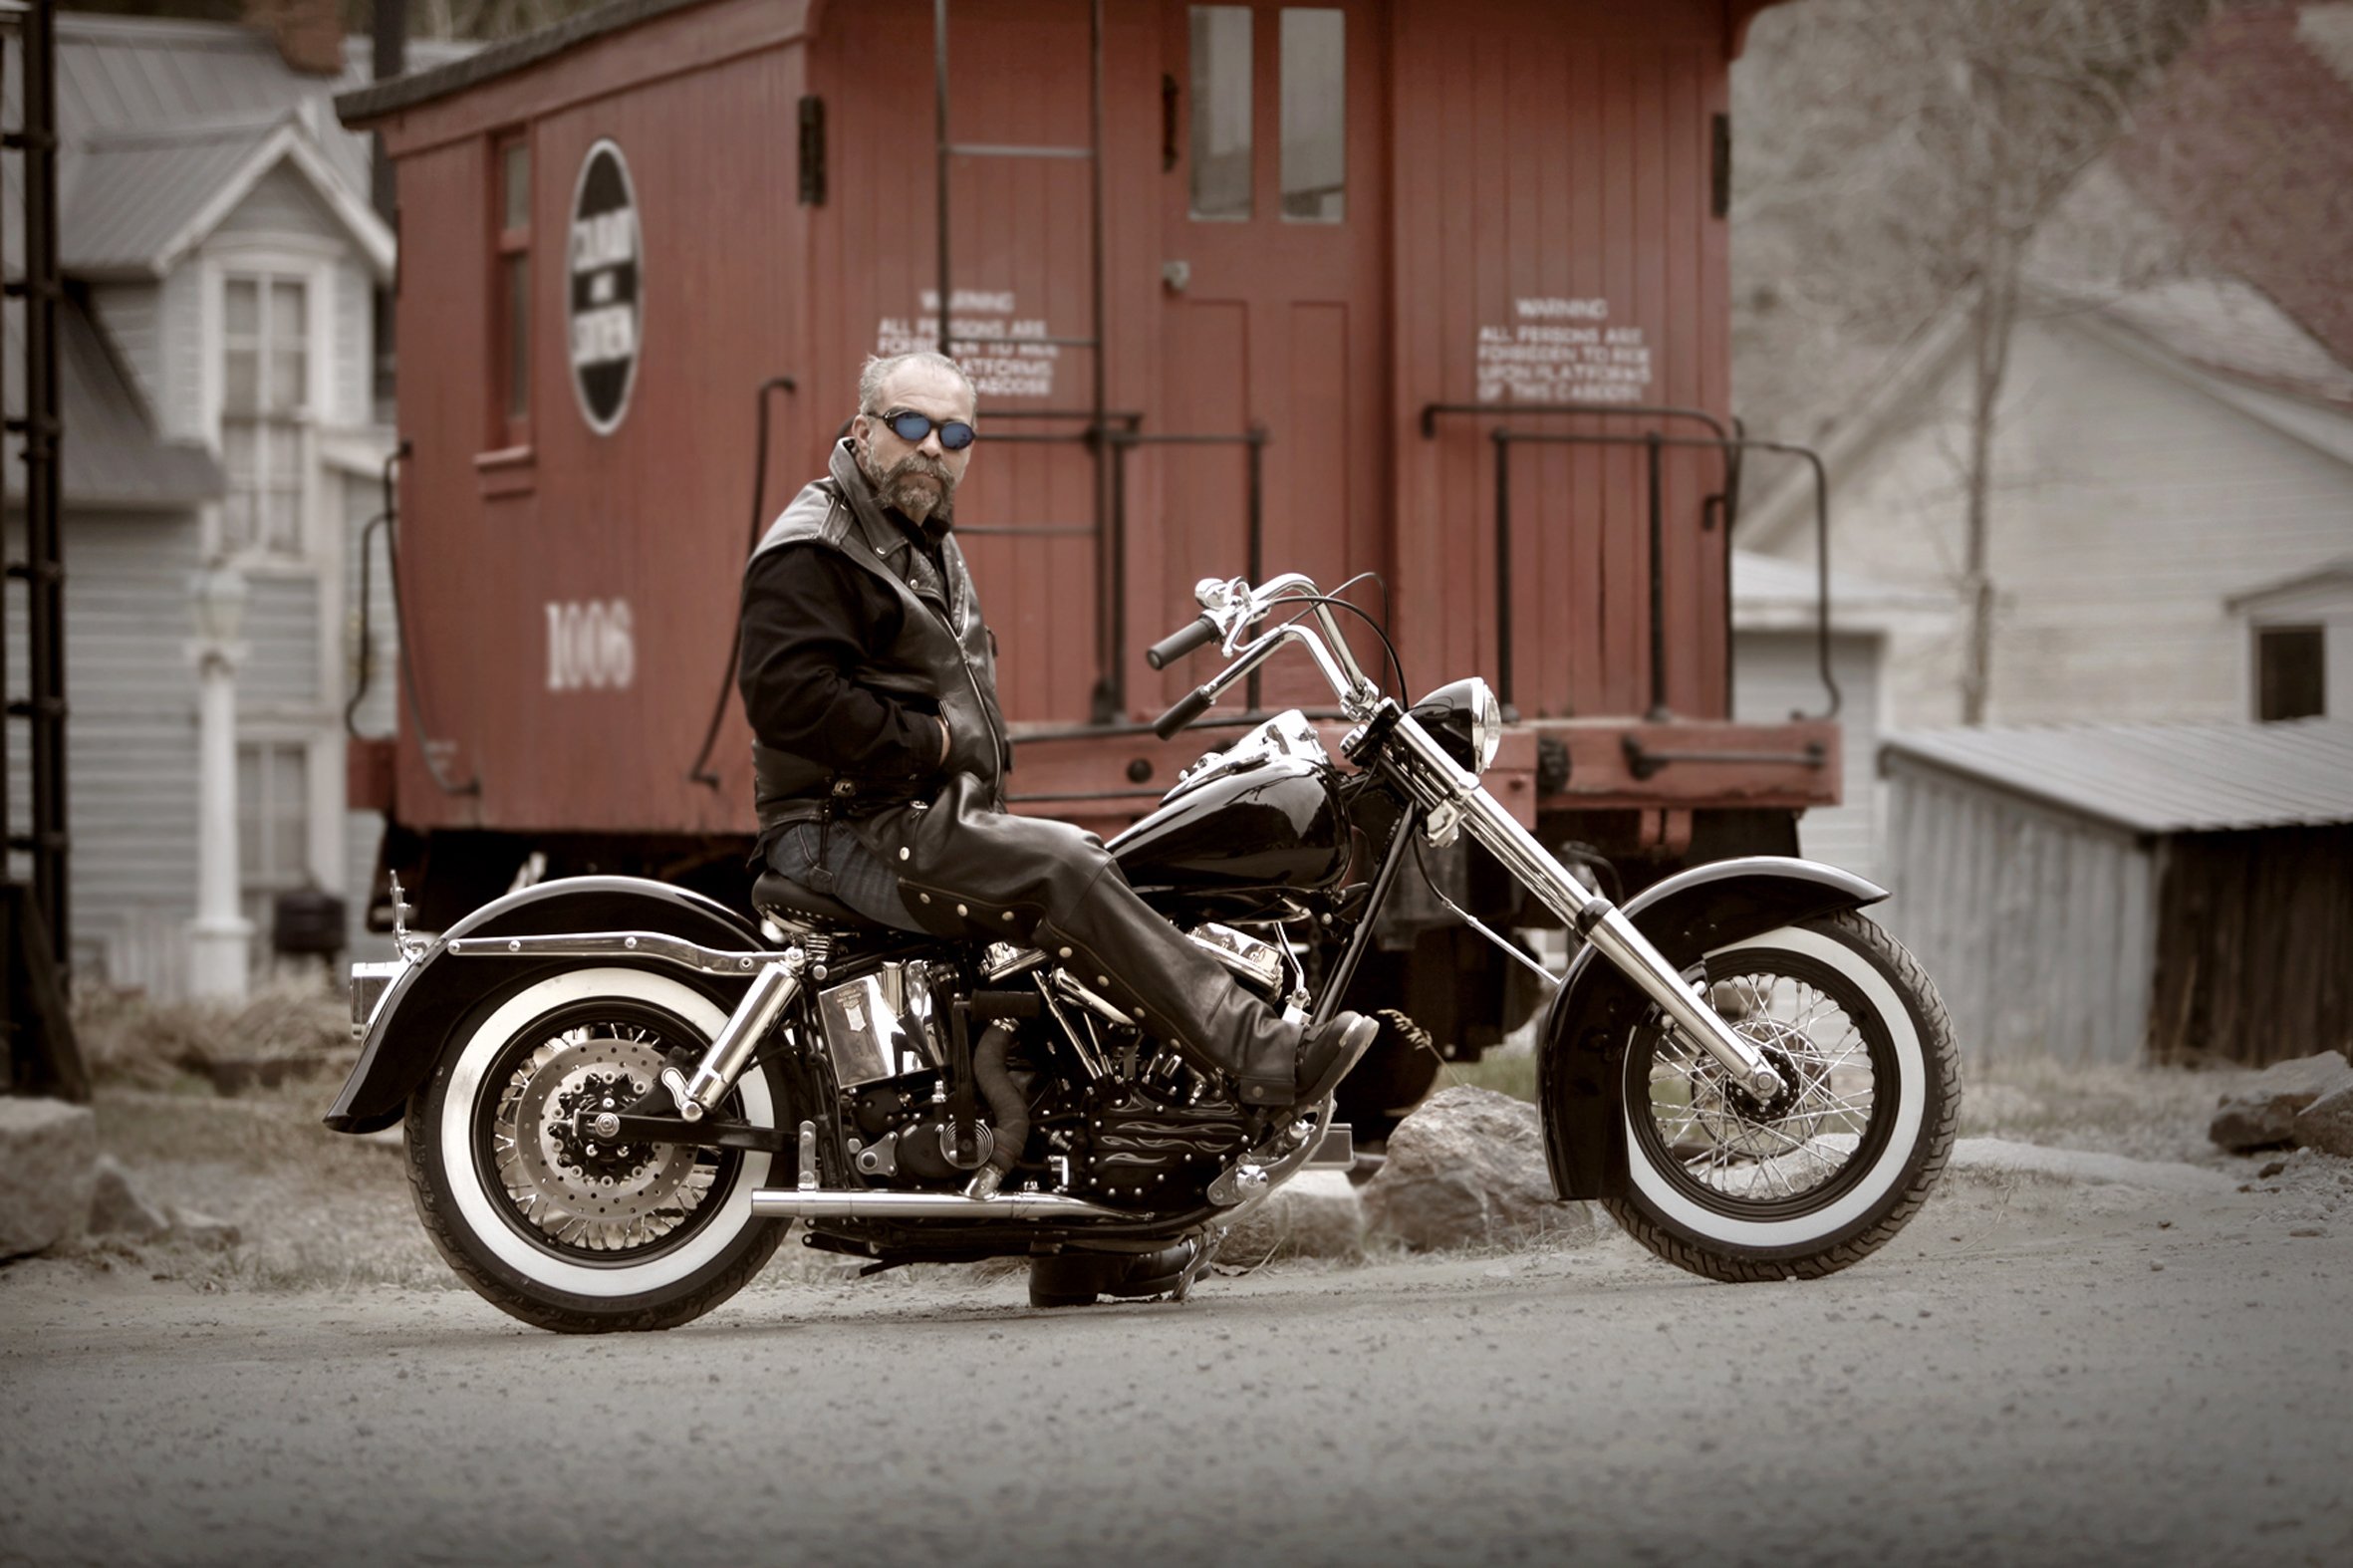 Sams favourite bike - an Old Harley Davidson.jpg